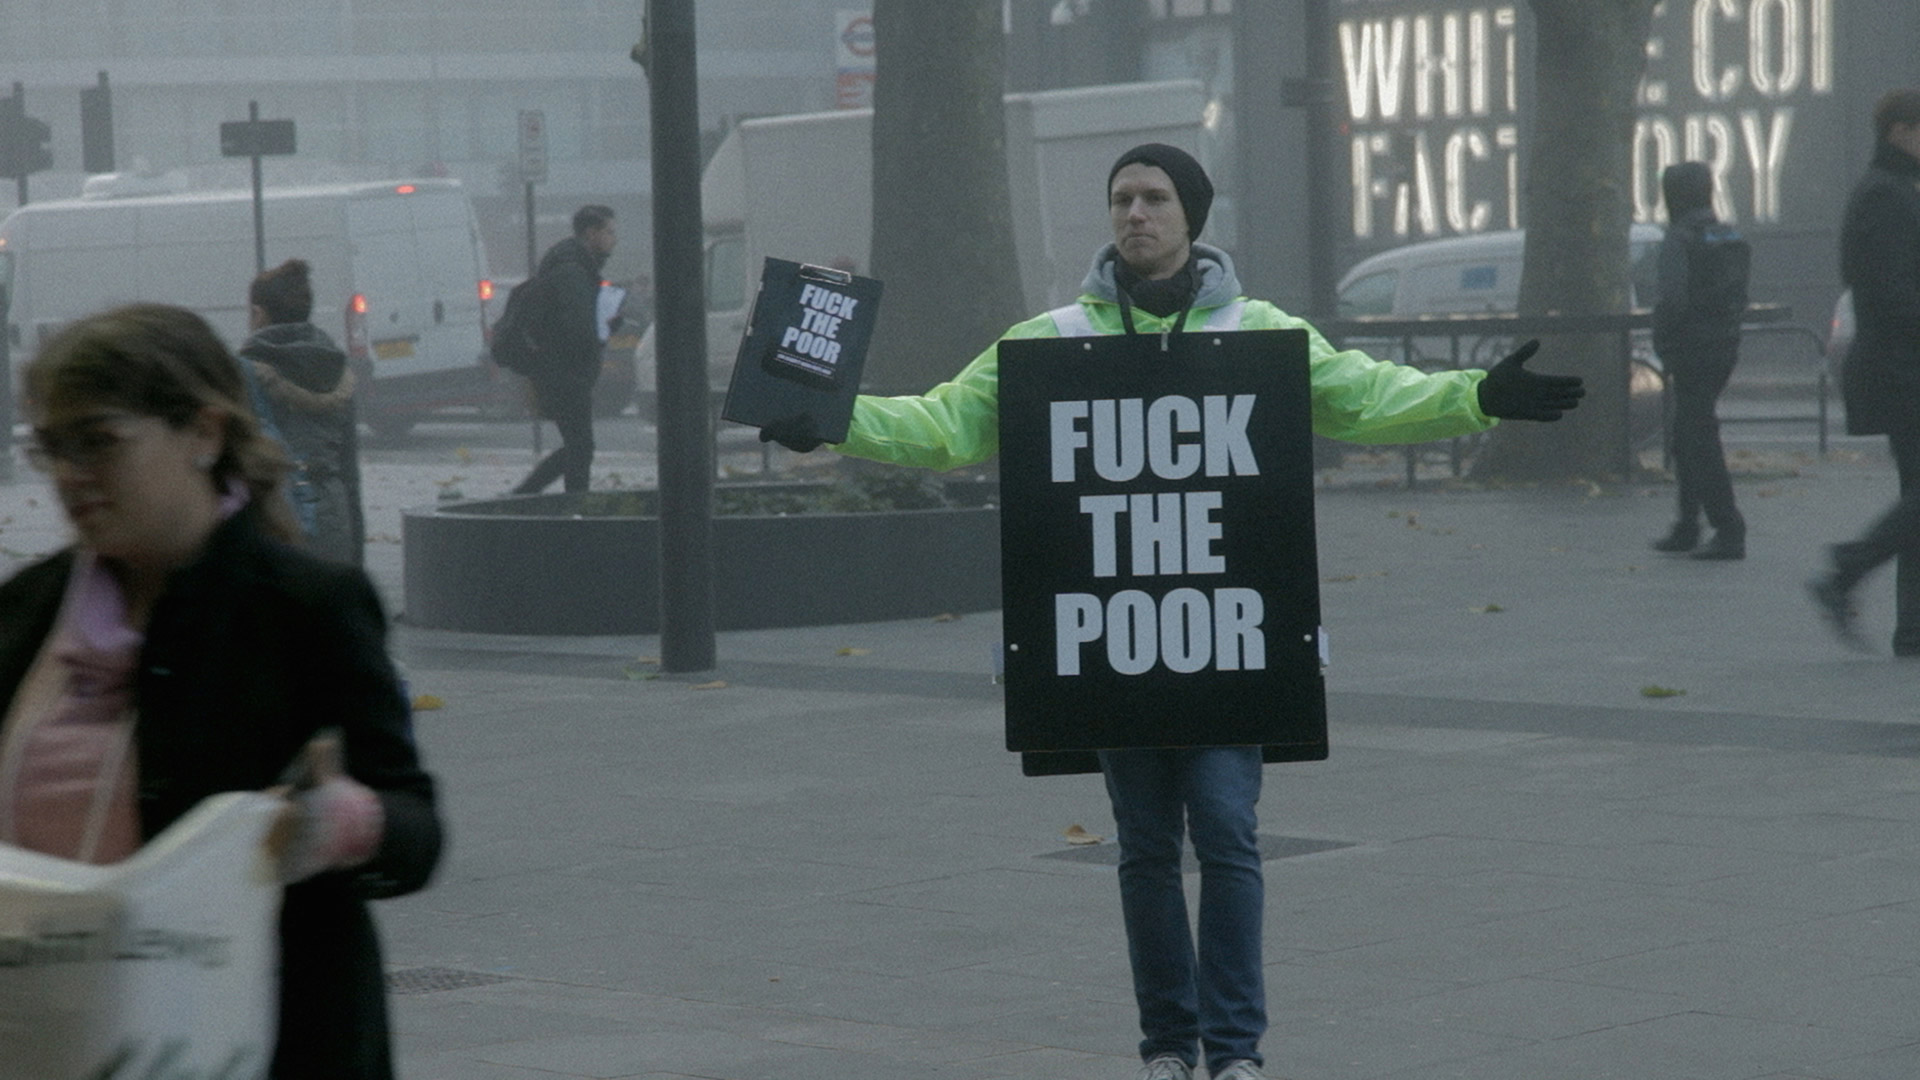 Fuck the Poor